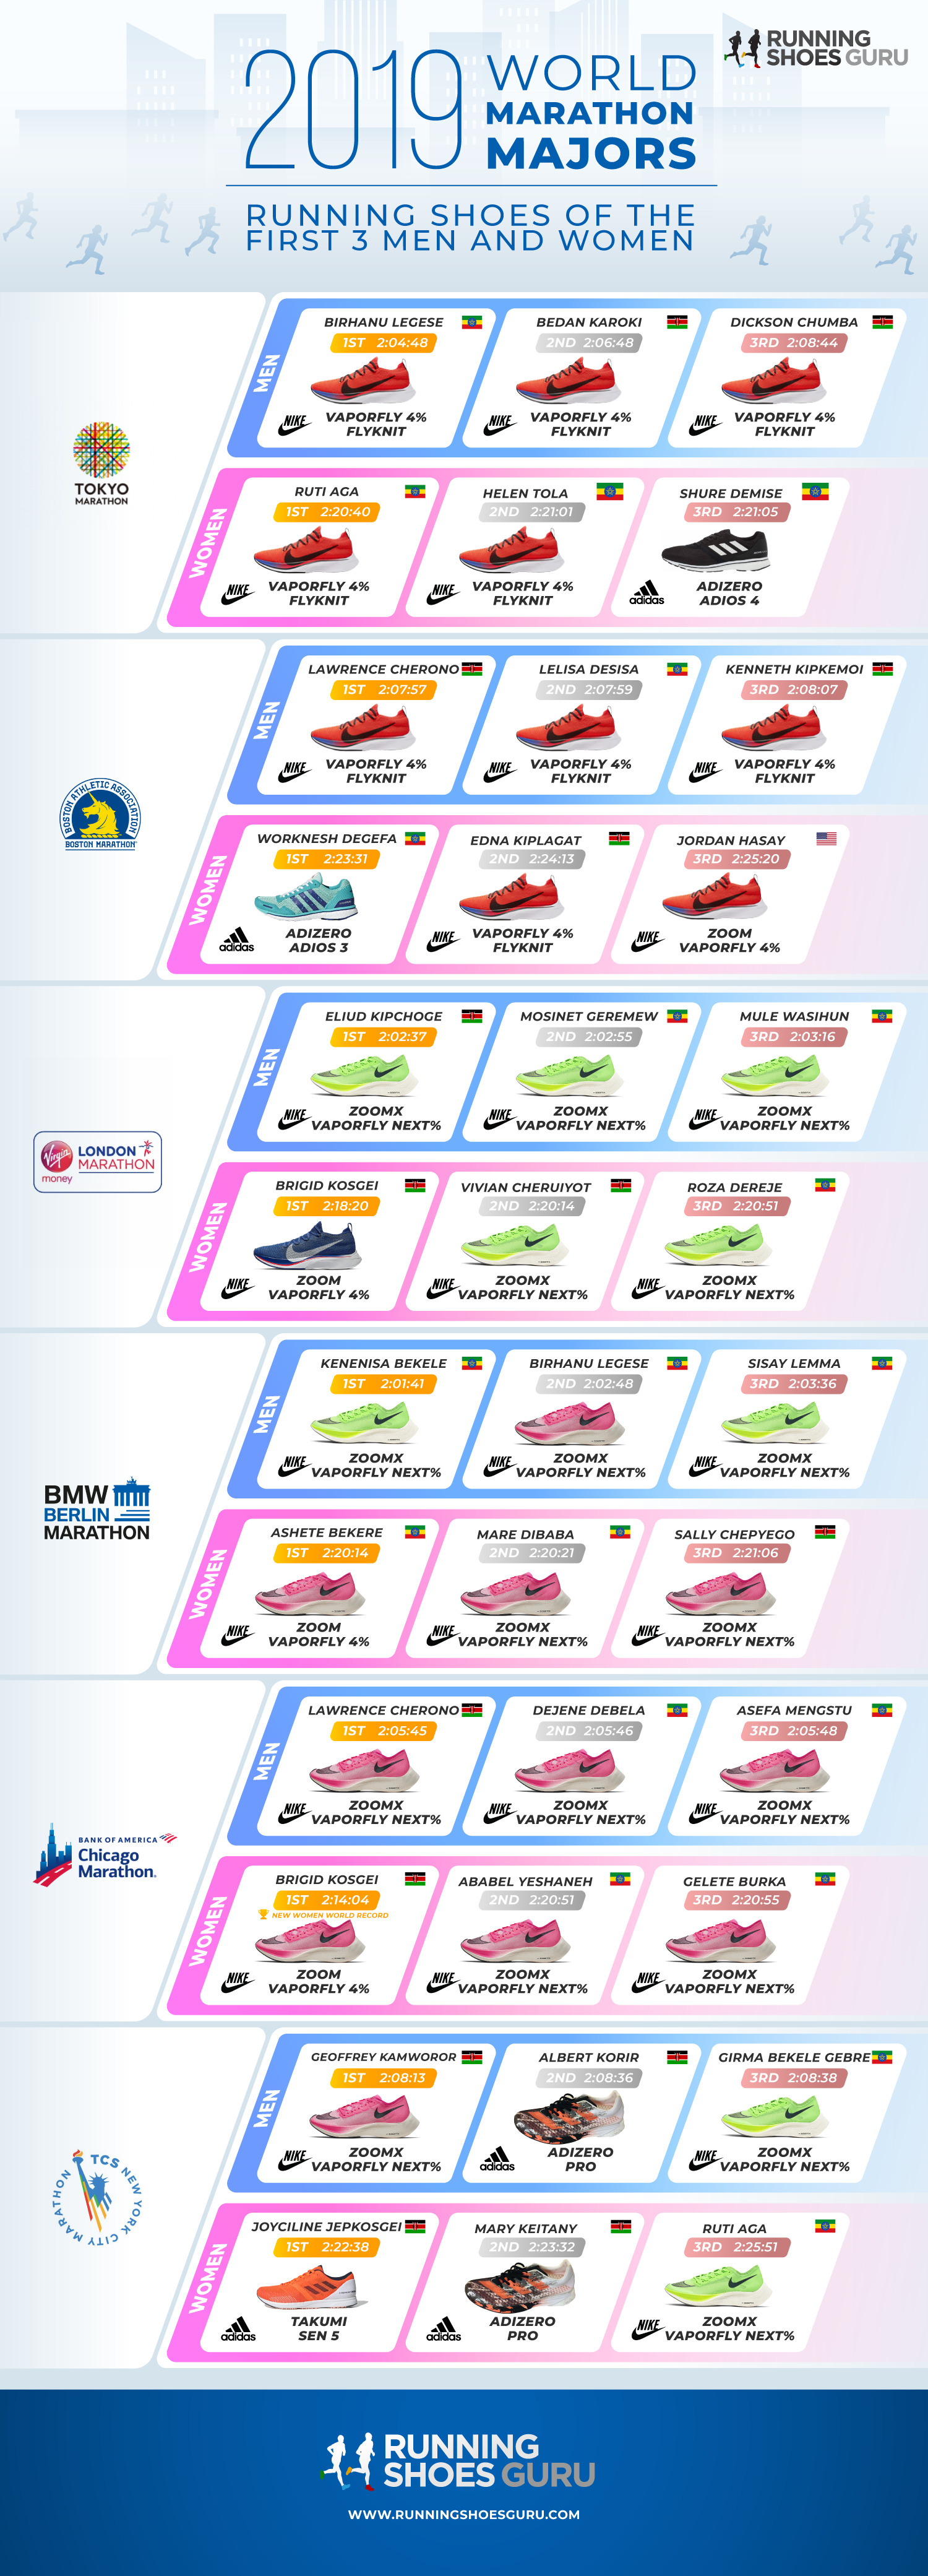 [Infographic] Tổng hợp giày chạy của các nhà vô địch 2019 World Marathon Majors - 2019 marathon running shoes majors